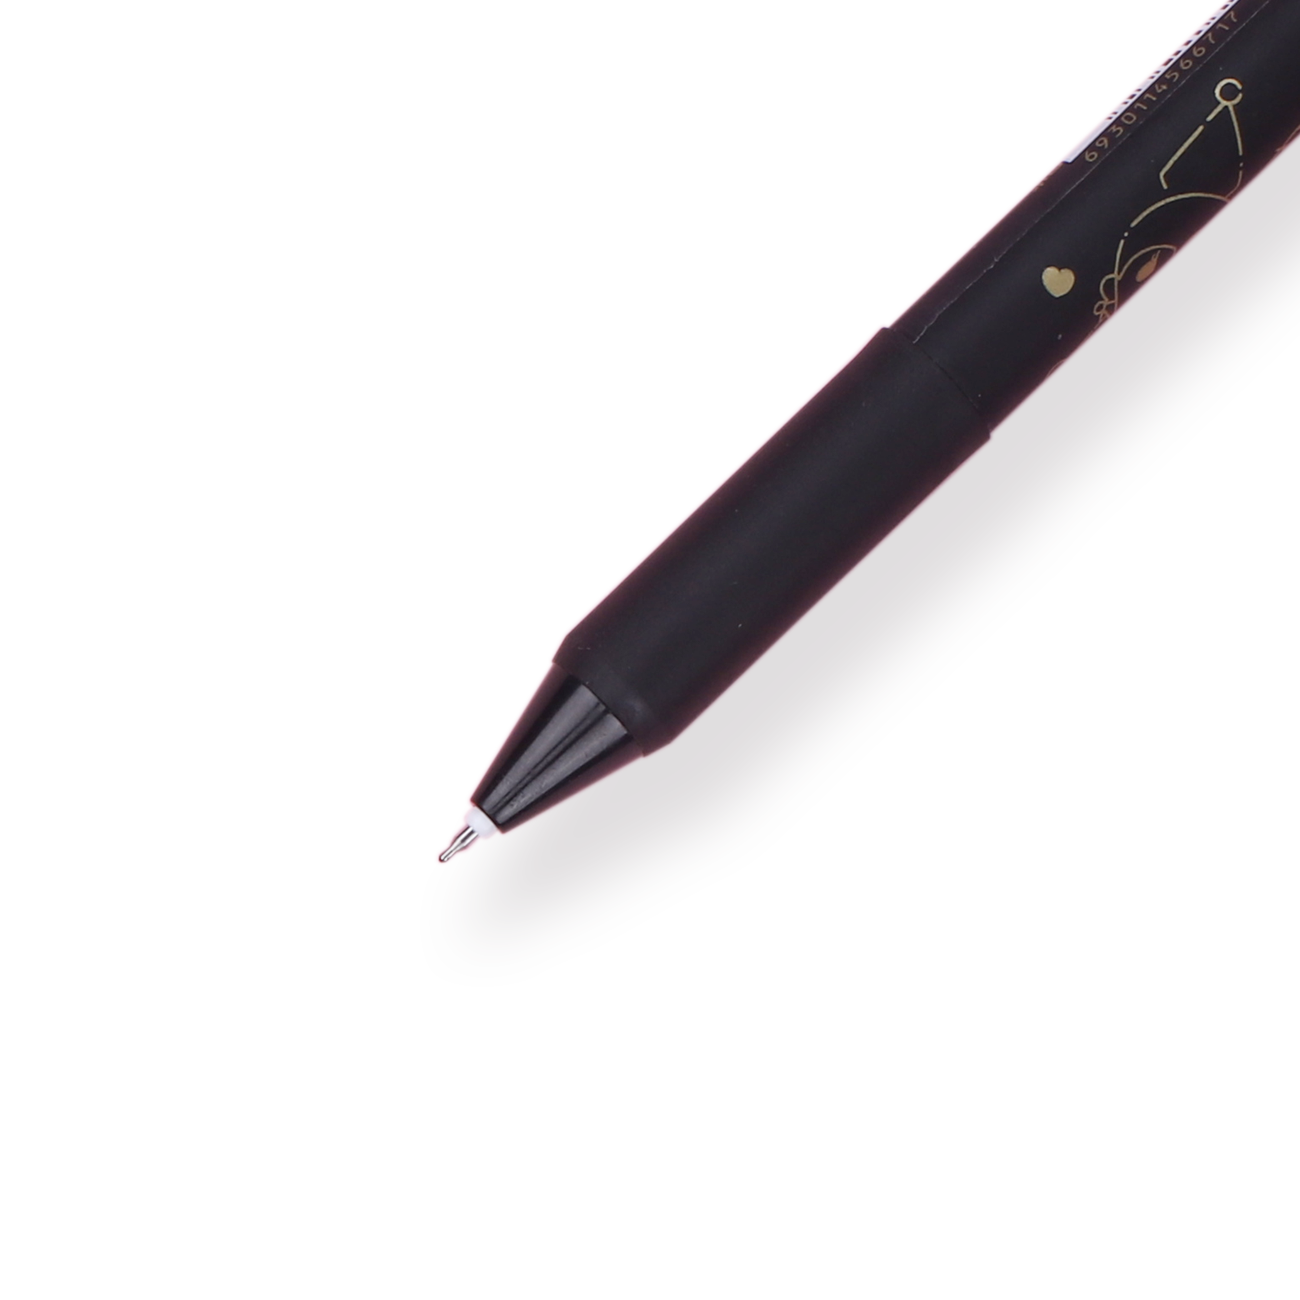 Kuromi Series Gel Pen - Black ink - 0.5 mm - Black Body - Stationery Pal